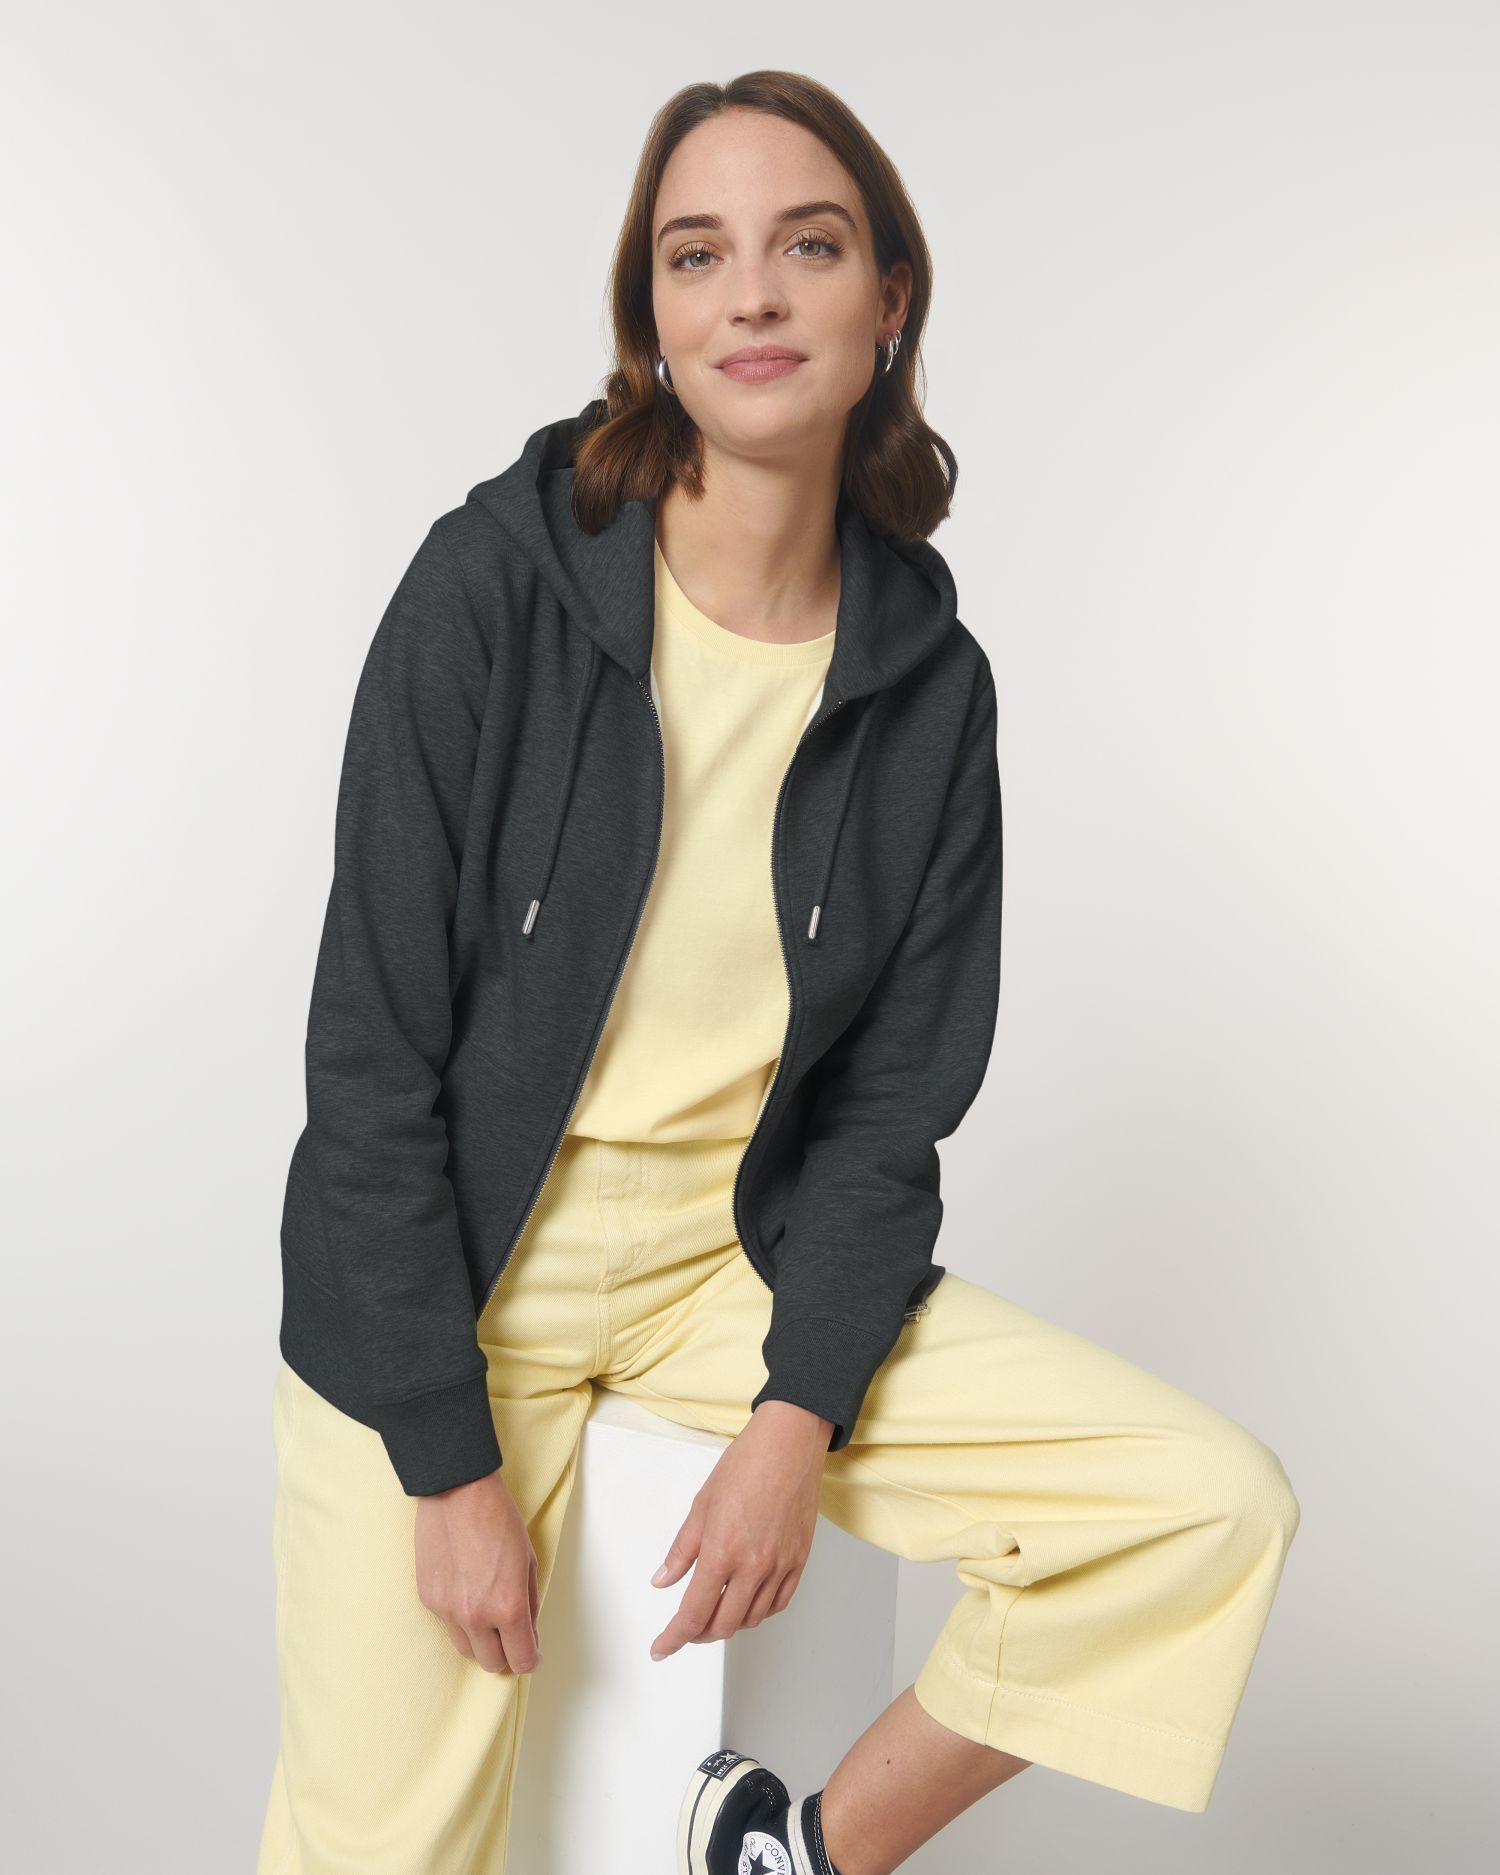 Zip-thru sweatshirts Stanley Cultivator in Farbe Dark Heather Grey